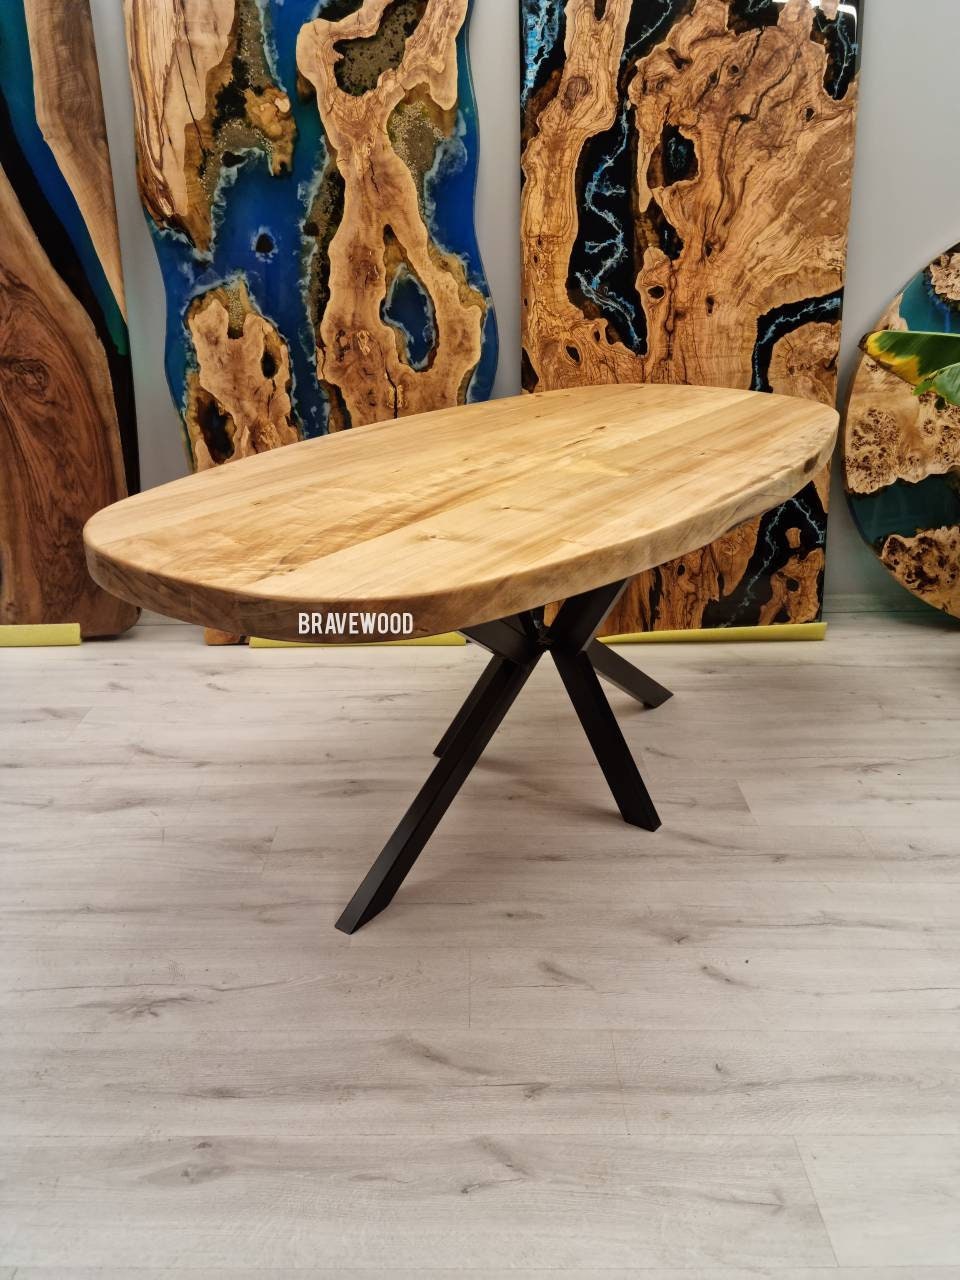 BASCO tavolino ovale 120x60 in legno massello con base dogata design living  casa